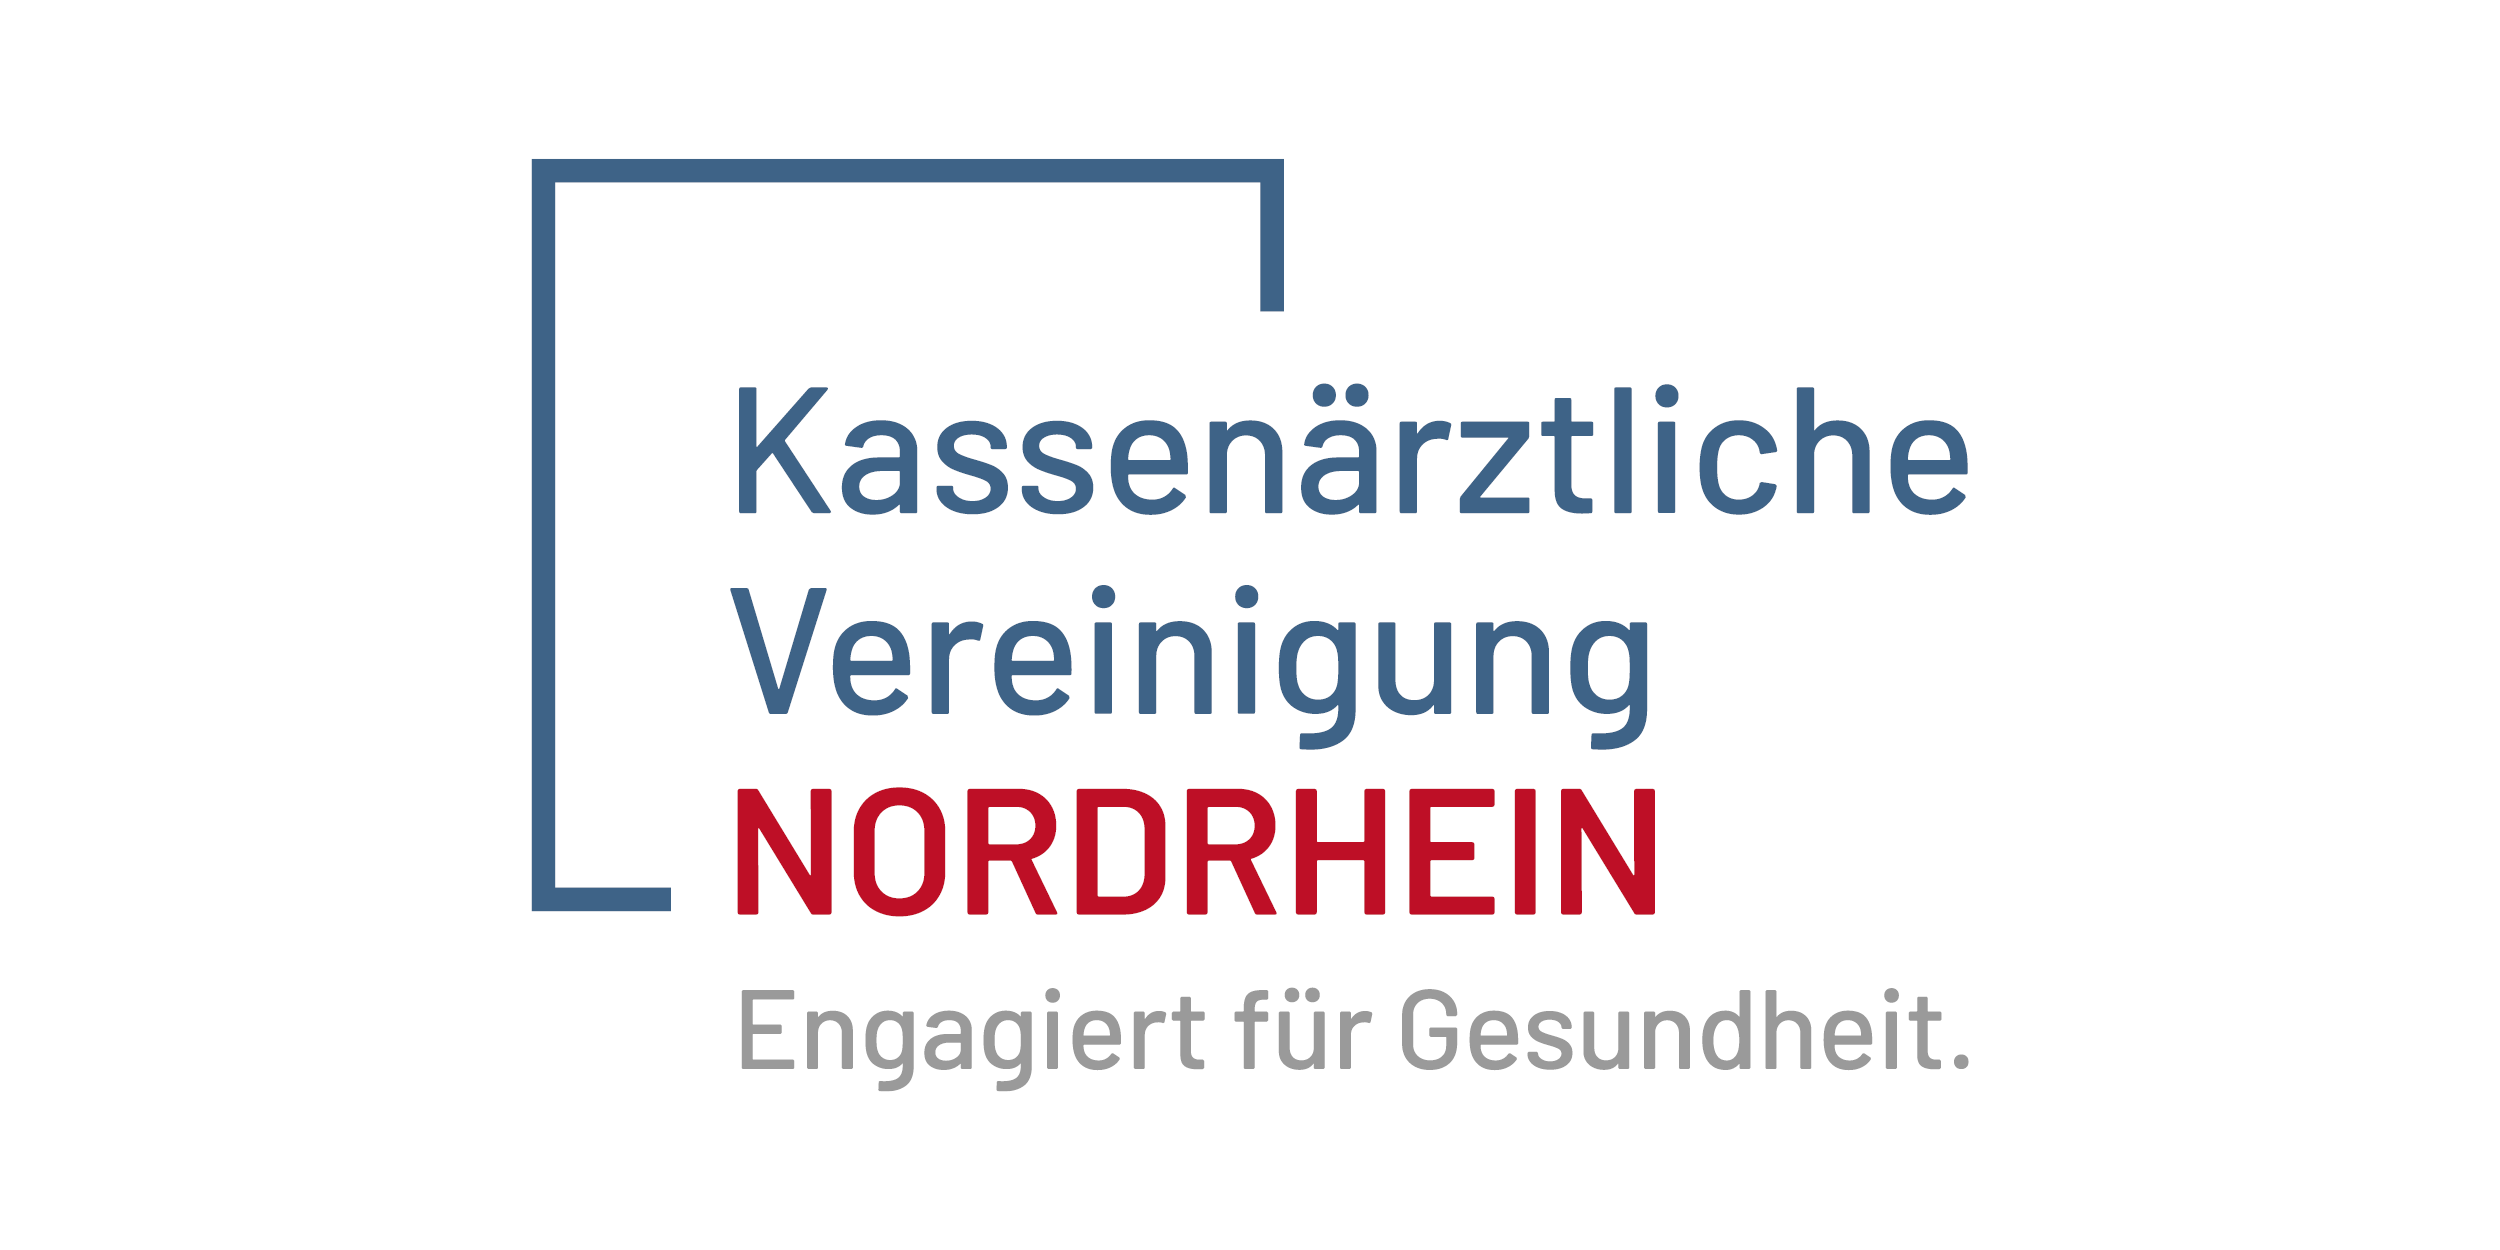 Das Bild zeigt das Logo der KV Nordrhein.